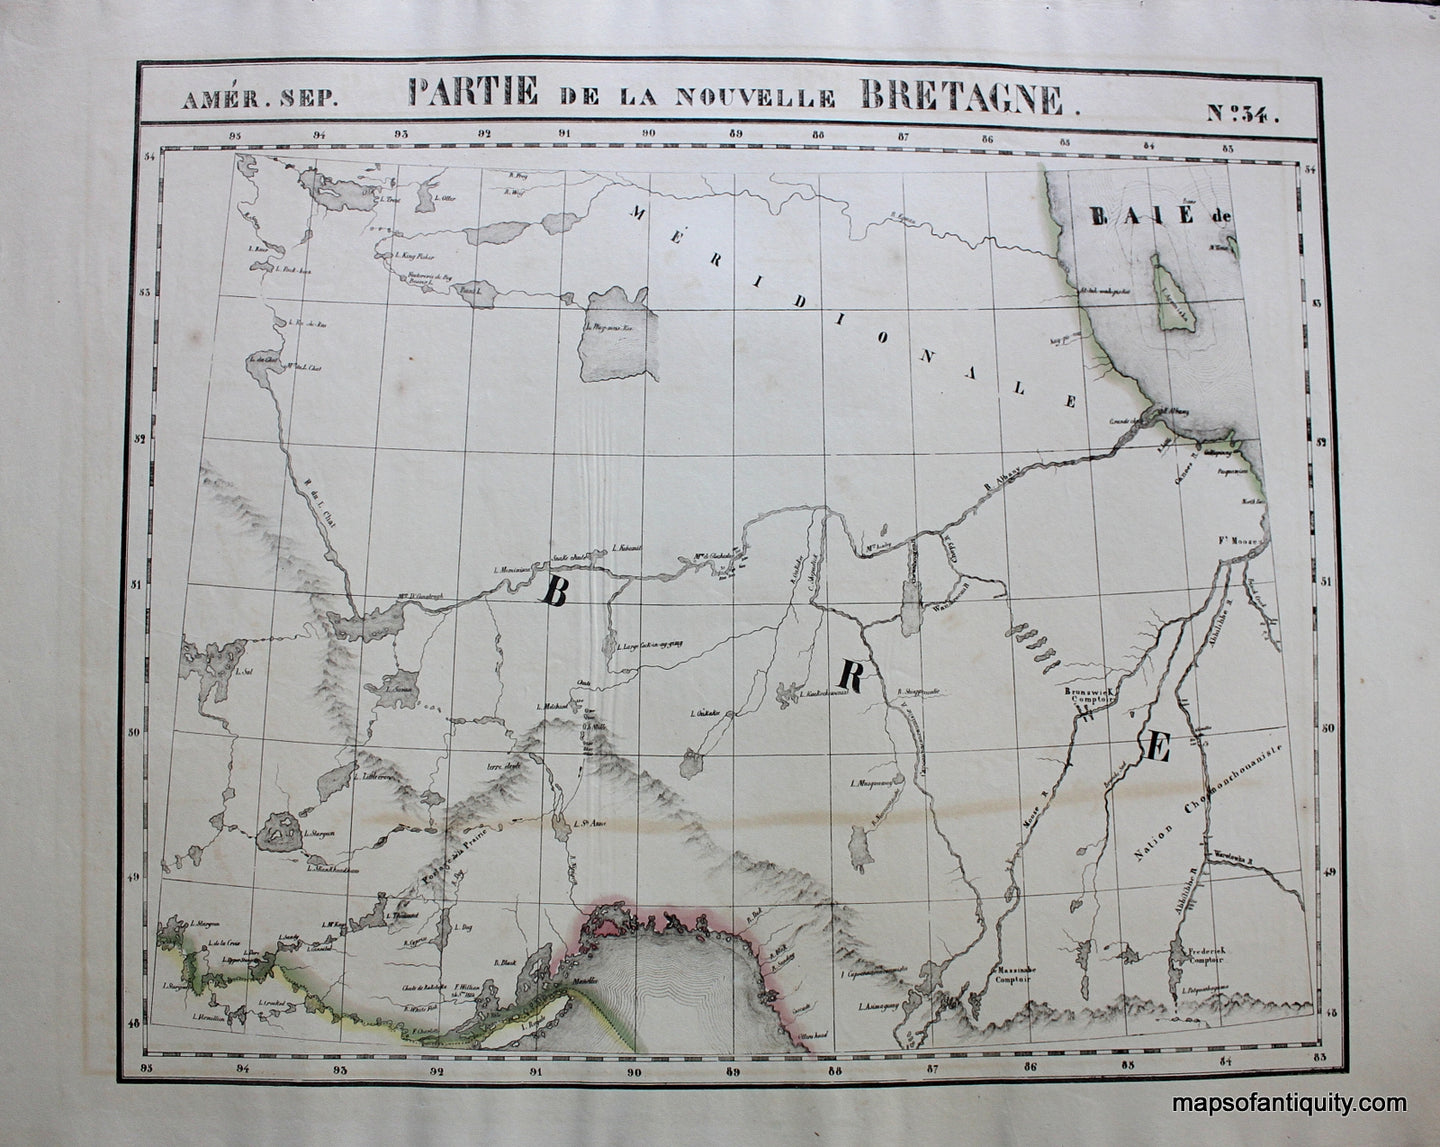 Antique-Map-Amer.-Sep.-No.-34-Partie-de-la-Nouvelle-Bretagne